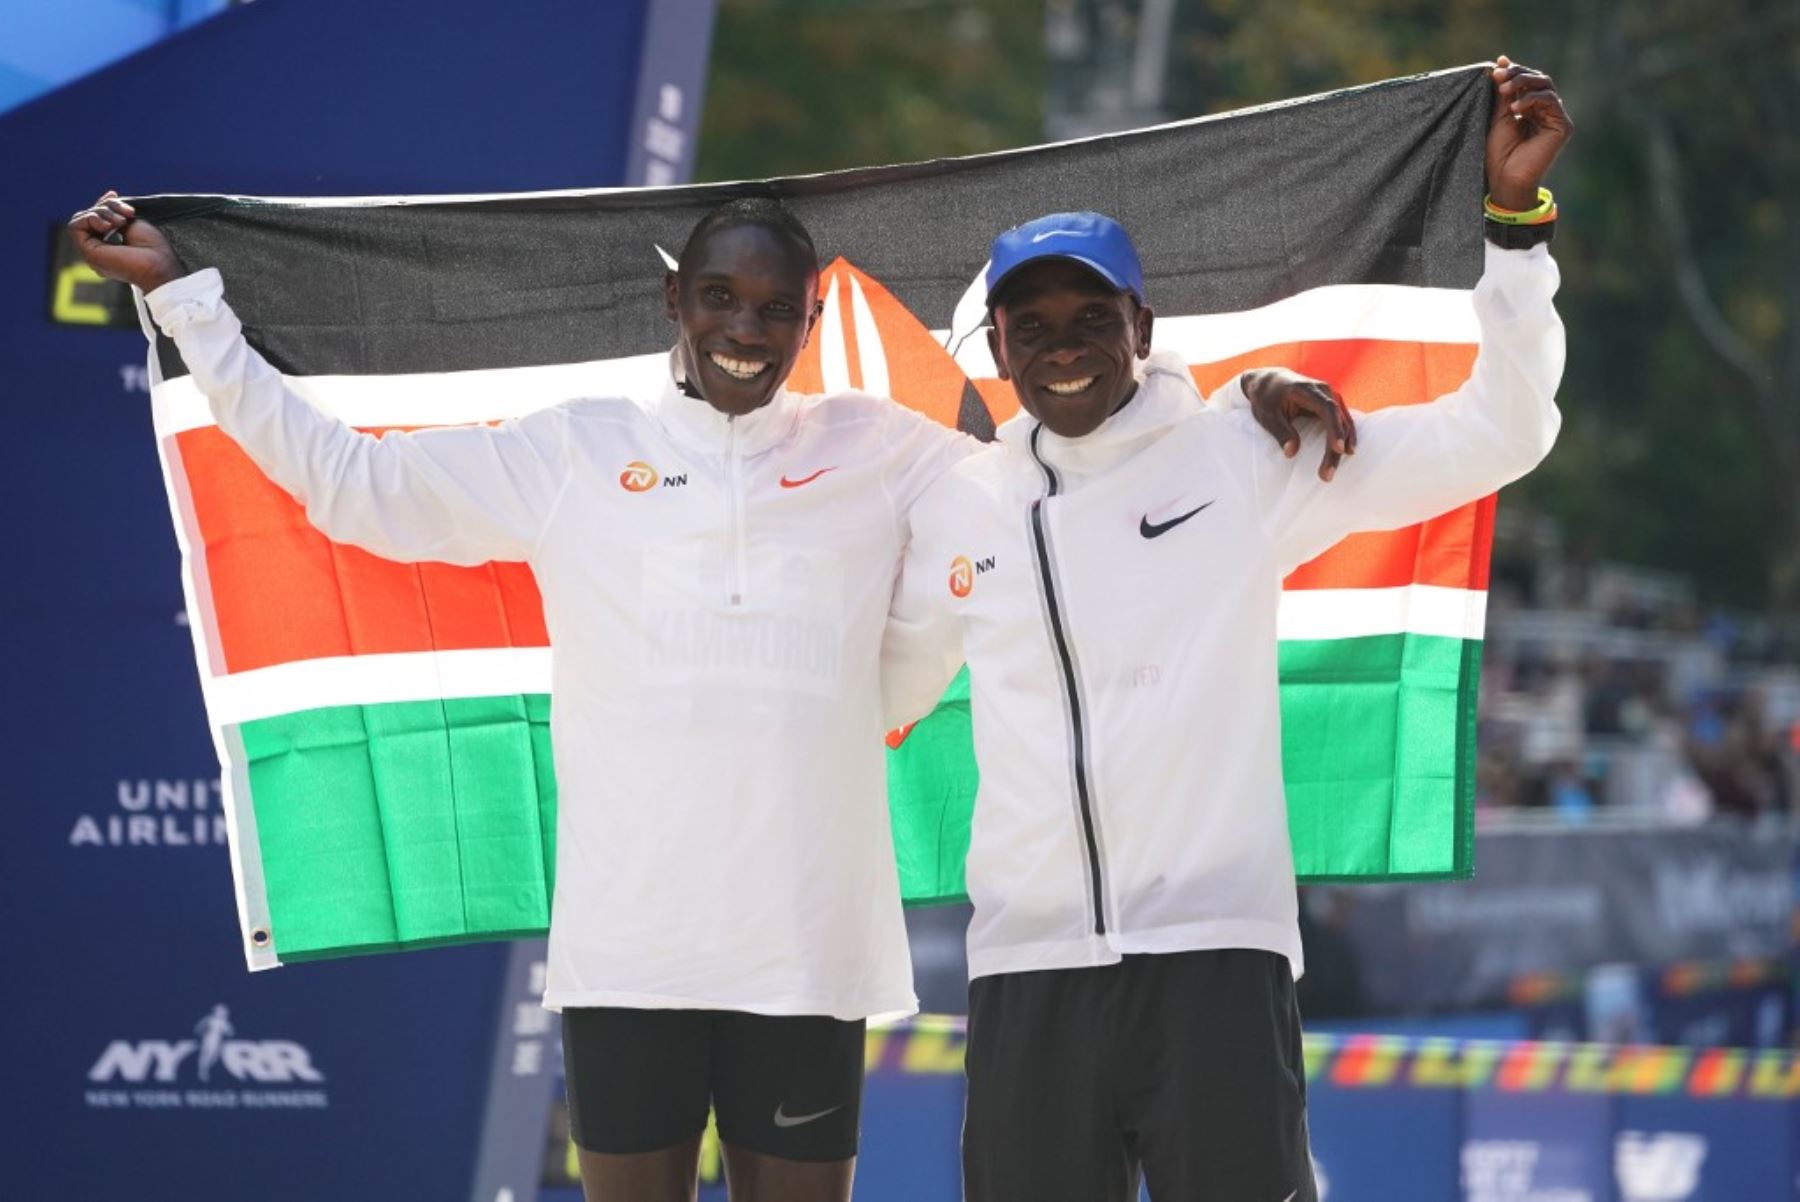 El keniata Geoffrey Kamworor se impuso este domingo en el maratón de Nueva York en la rama masculina, poco después de que su compatriota Joyciline Jepkosgei acabara con el reinado de Mary Keitany en la carrera de mujeres.